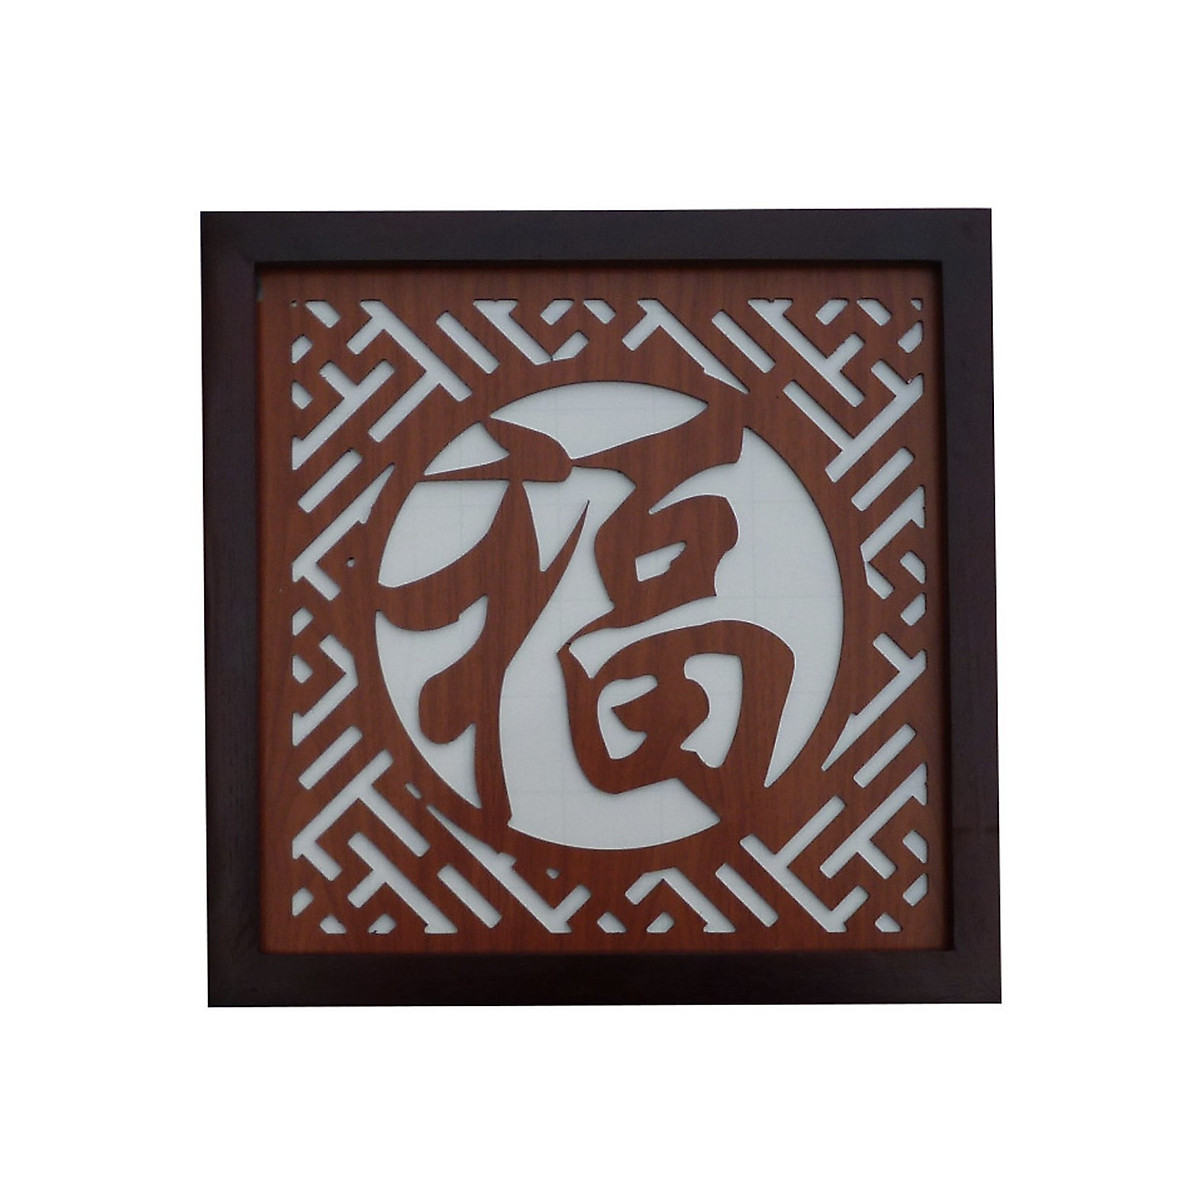 Tấm Chống Ám Khói dành cho bàn thờ treo tuòng Chữ Phúc ( chữ Hán )